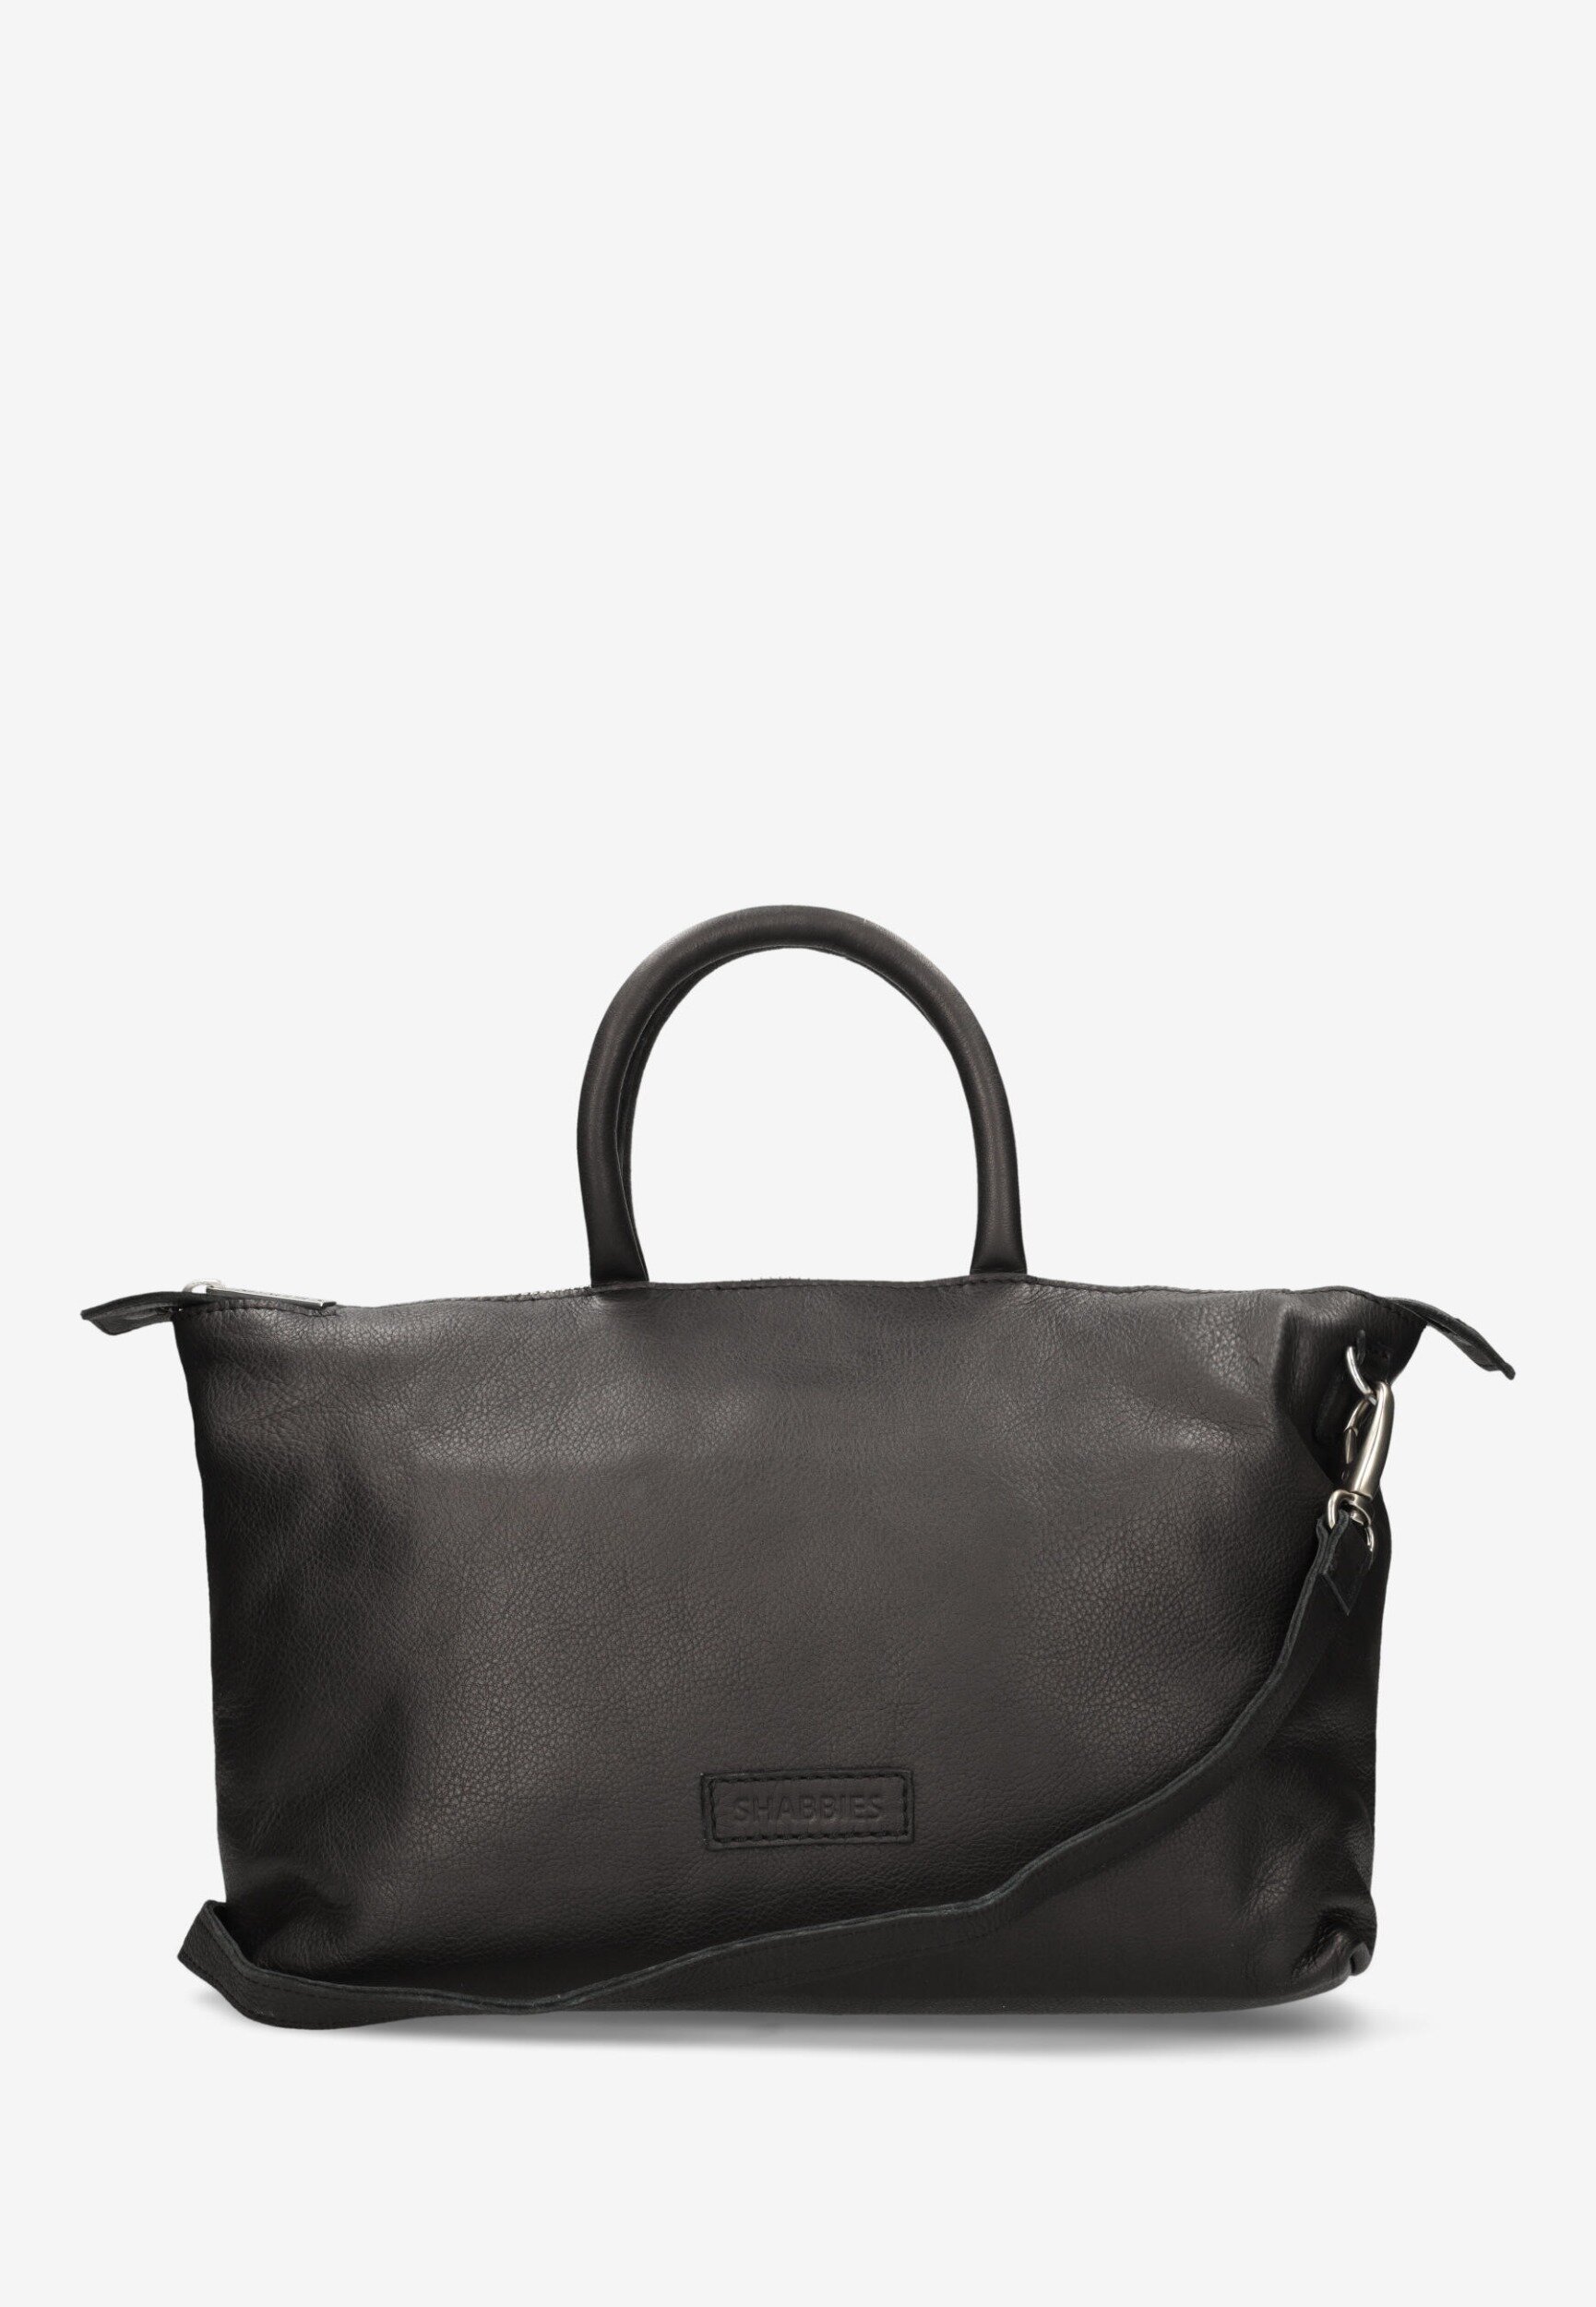 Handbag Belize Black von Shabbies Amsterdam